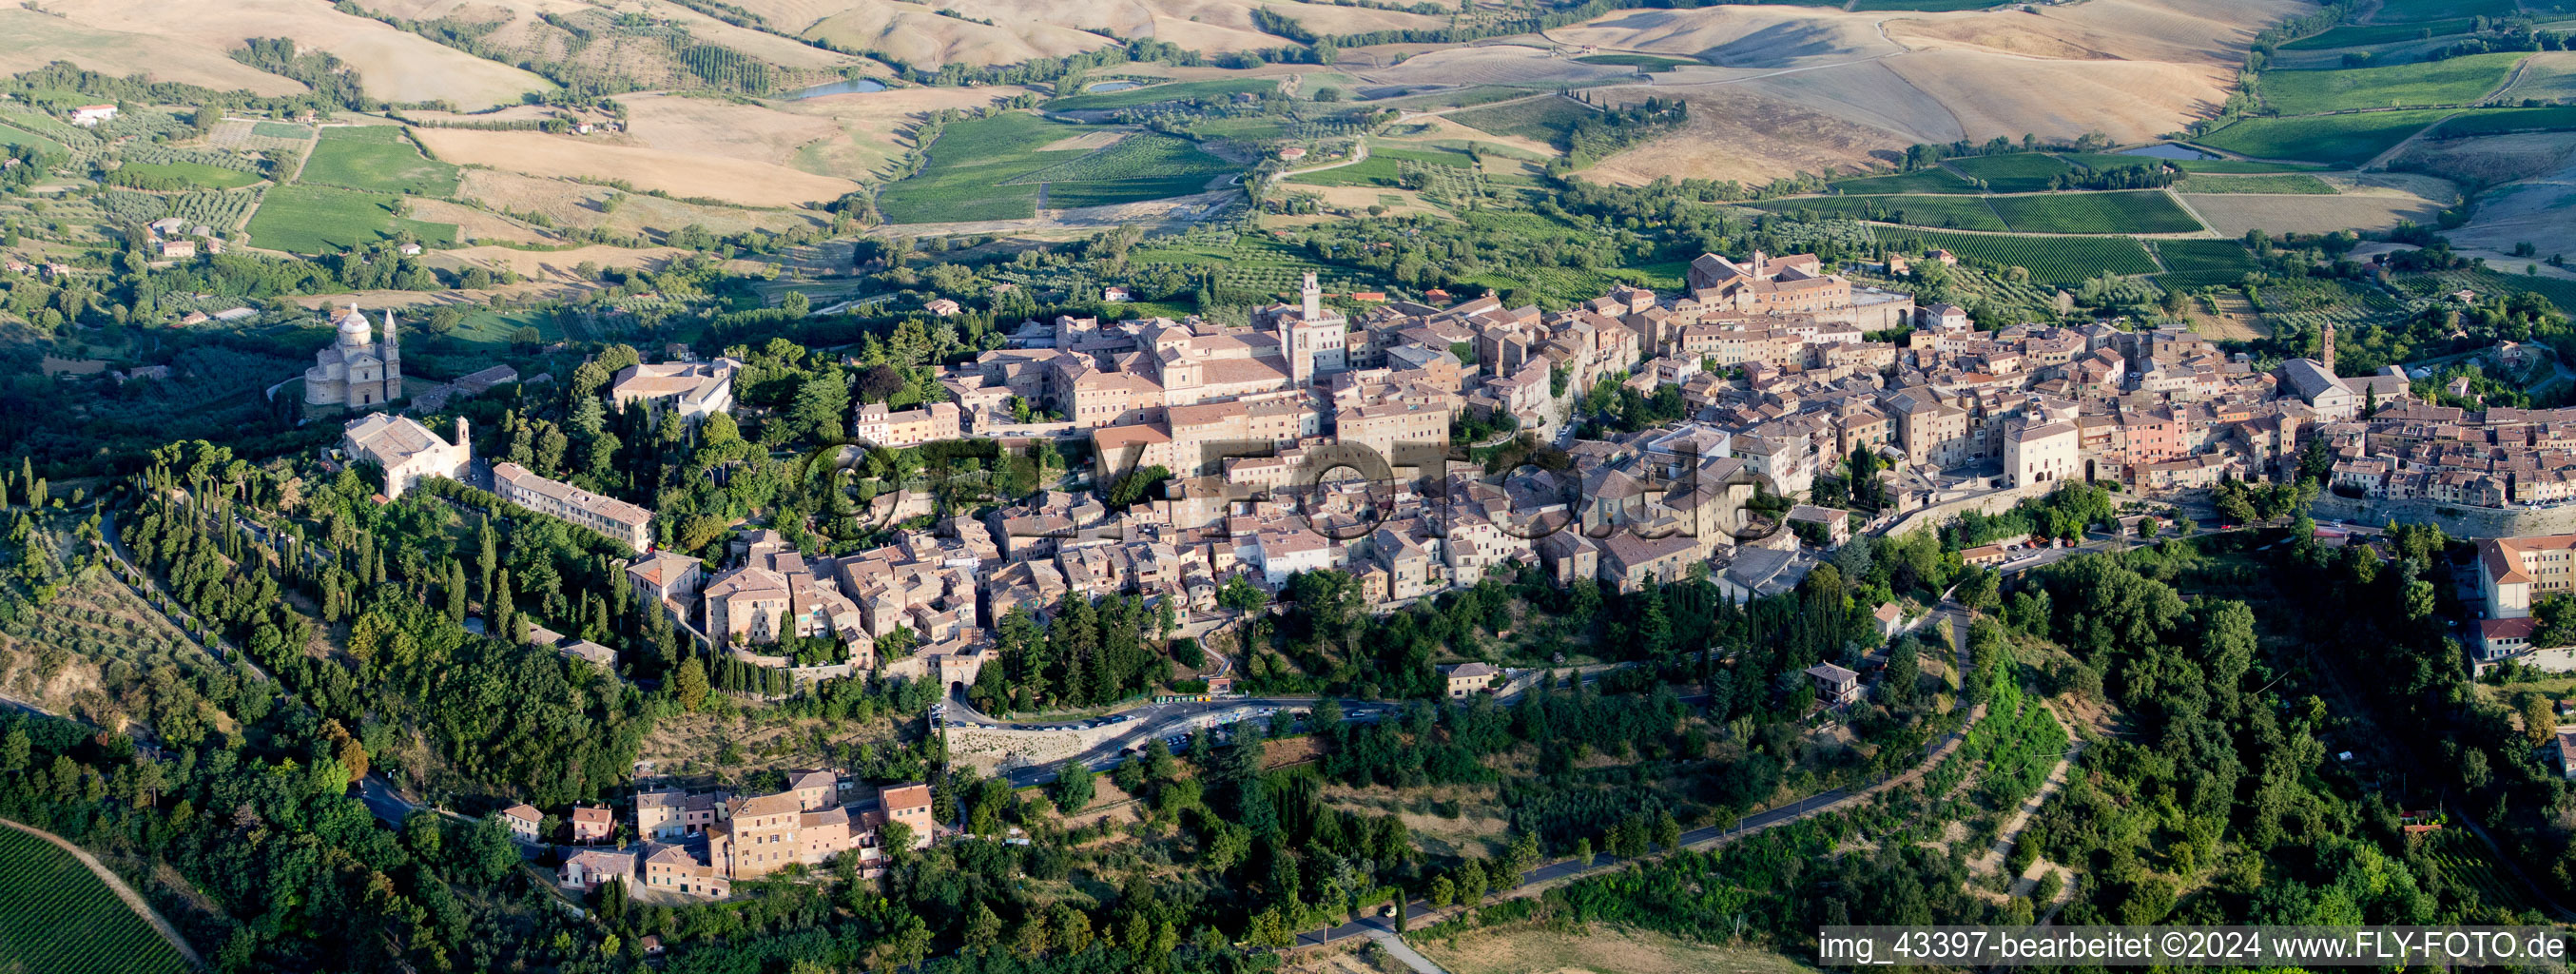 Vue aérienne de Panorama de la région et des environs à Montepulciano dans le département Toscane, Italie